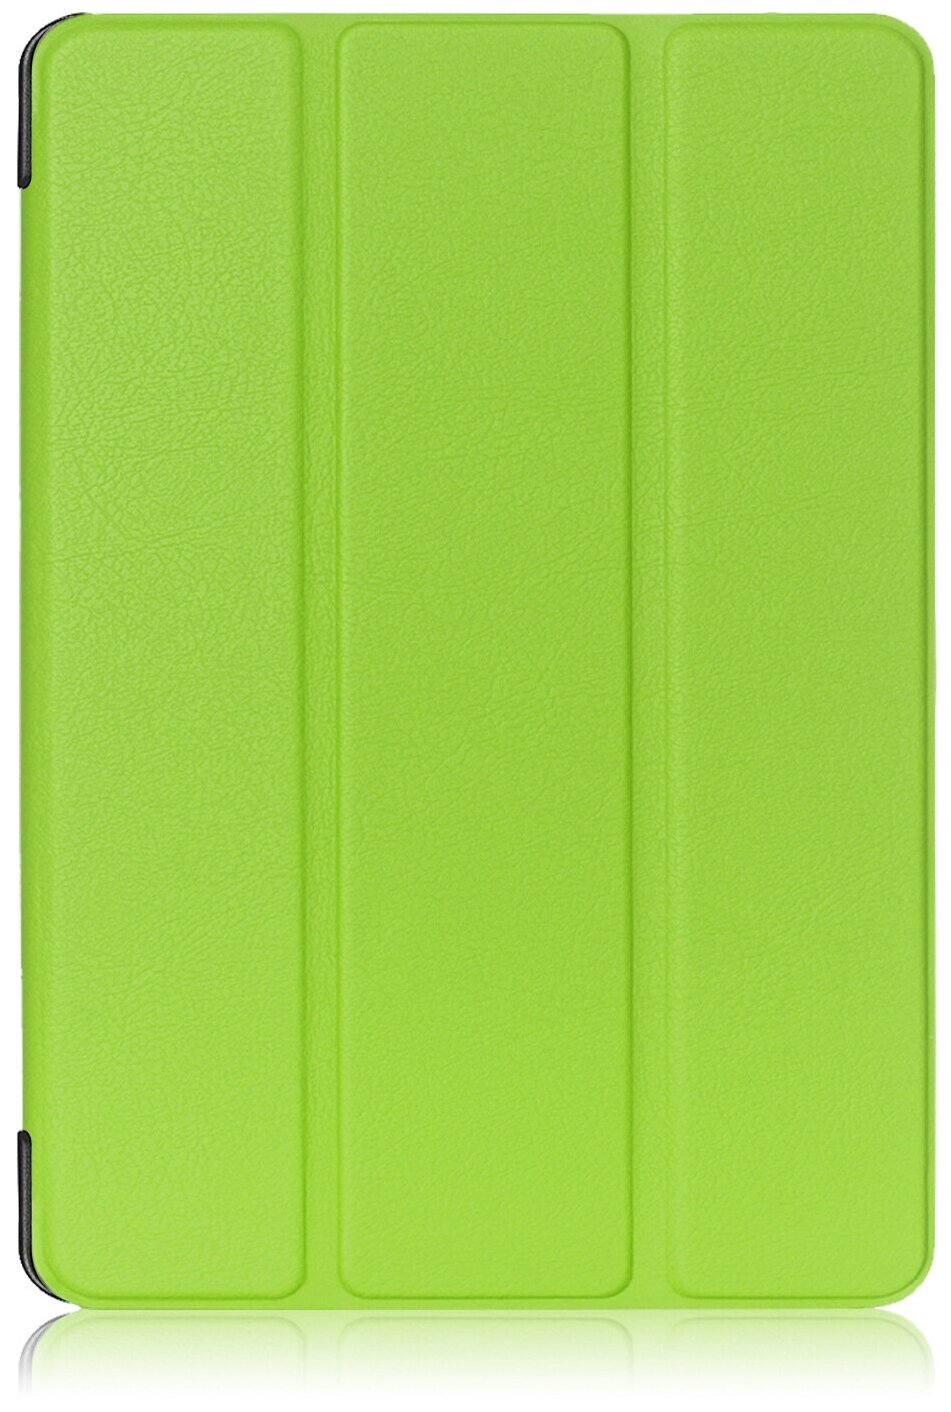 Чехол-обложка MyPads для Lenovo Tab 4 8 Plus TB-8704F/N тонкий умный кожаный на пластиковой основе с трансформацией в подставку зеленый